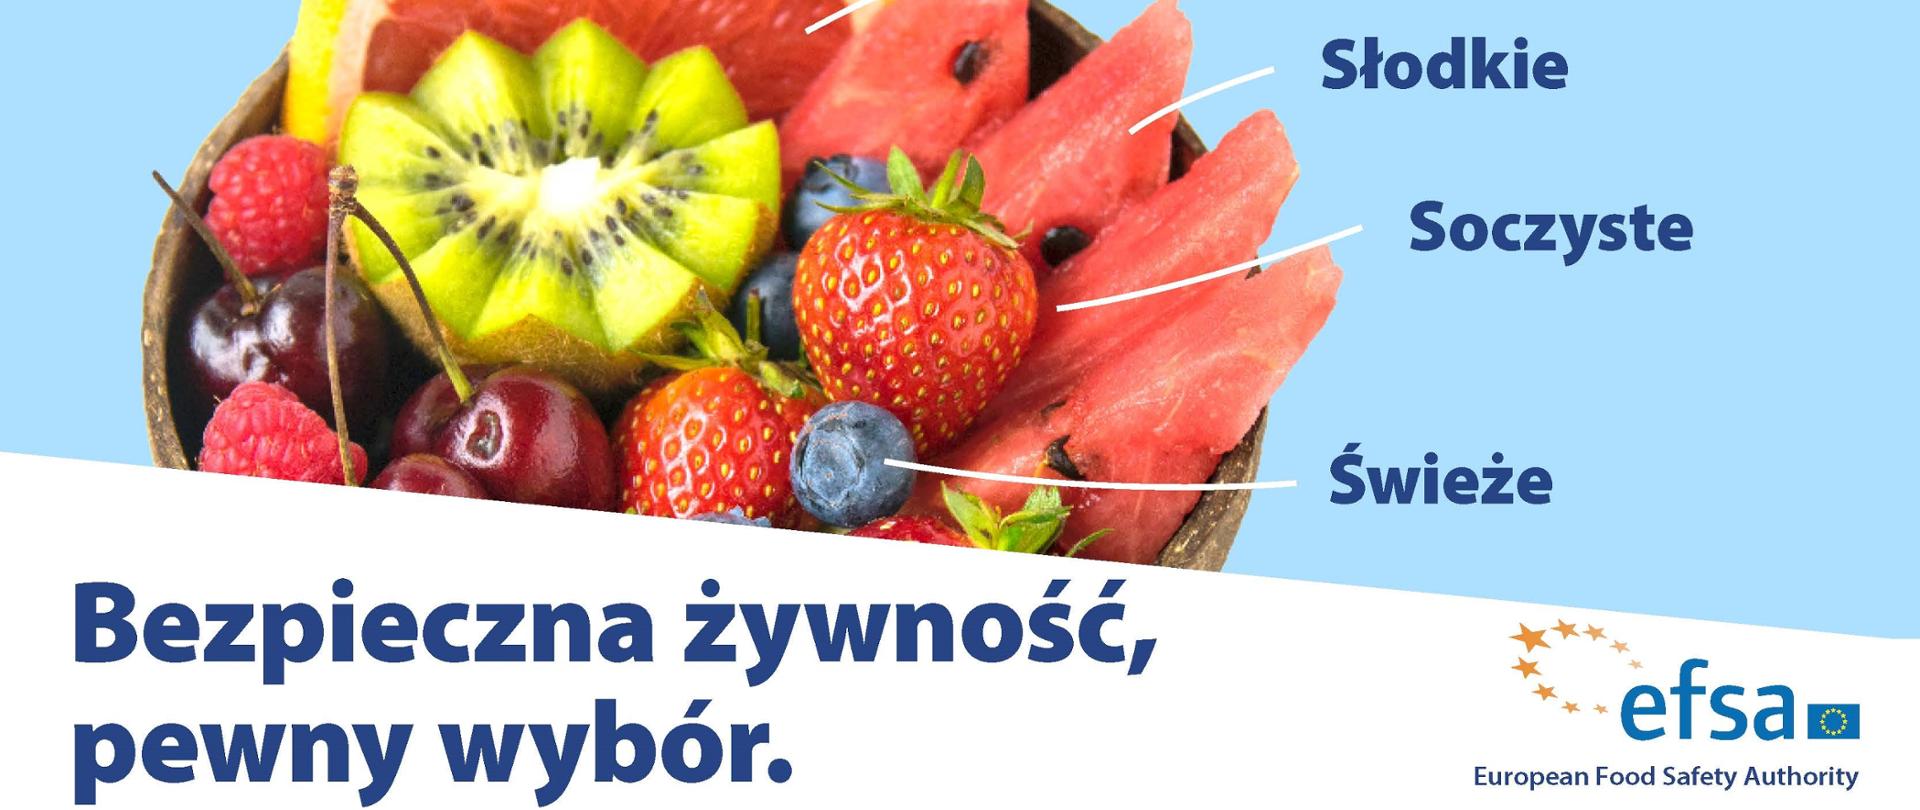 Zdjęcie przedstawia owoce: grejpfrut, kiwi, truskawki, czereśnie, borówki. Podpisane jest Bezpieczna żywność, pewny wybór. W prawym dolnym rogu znajduje się logo EFSA.